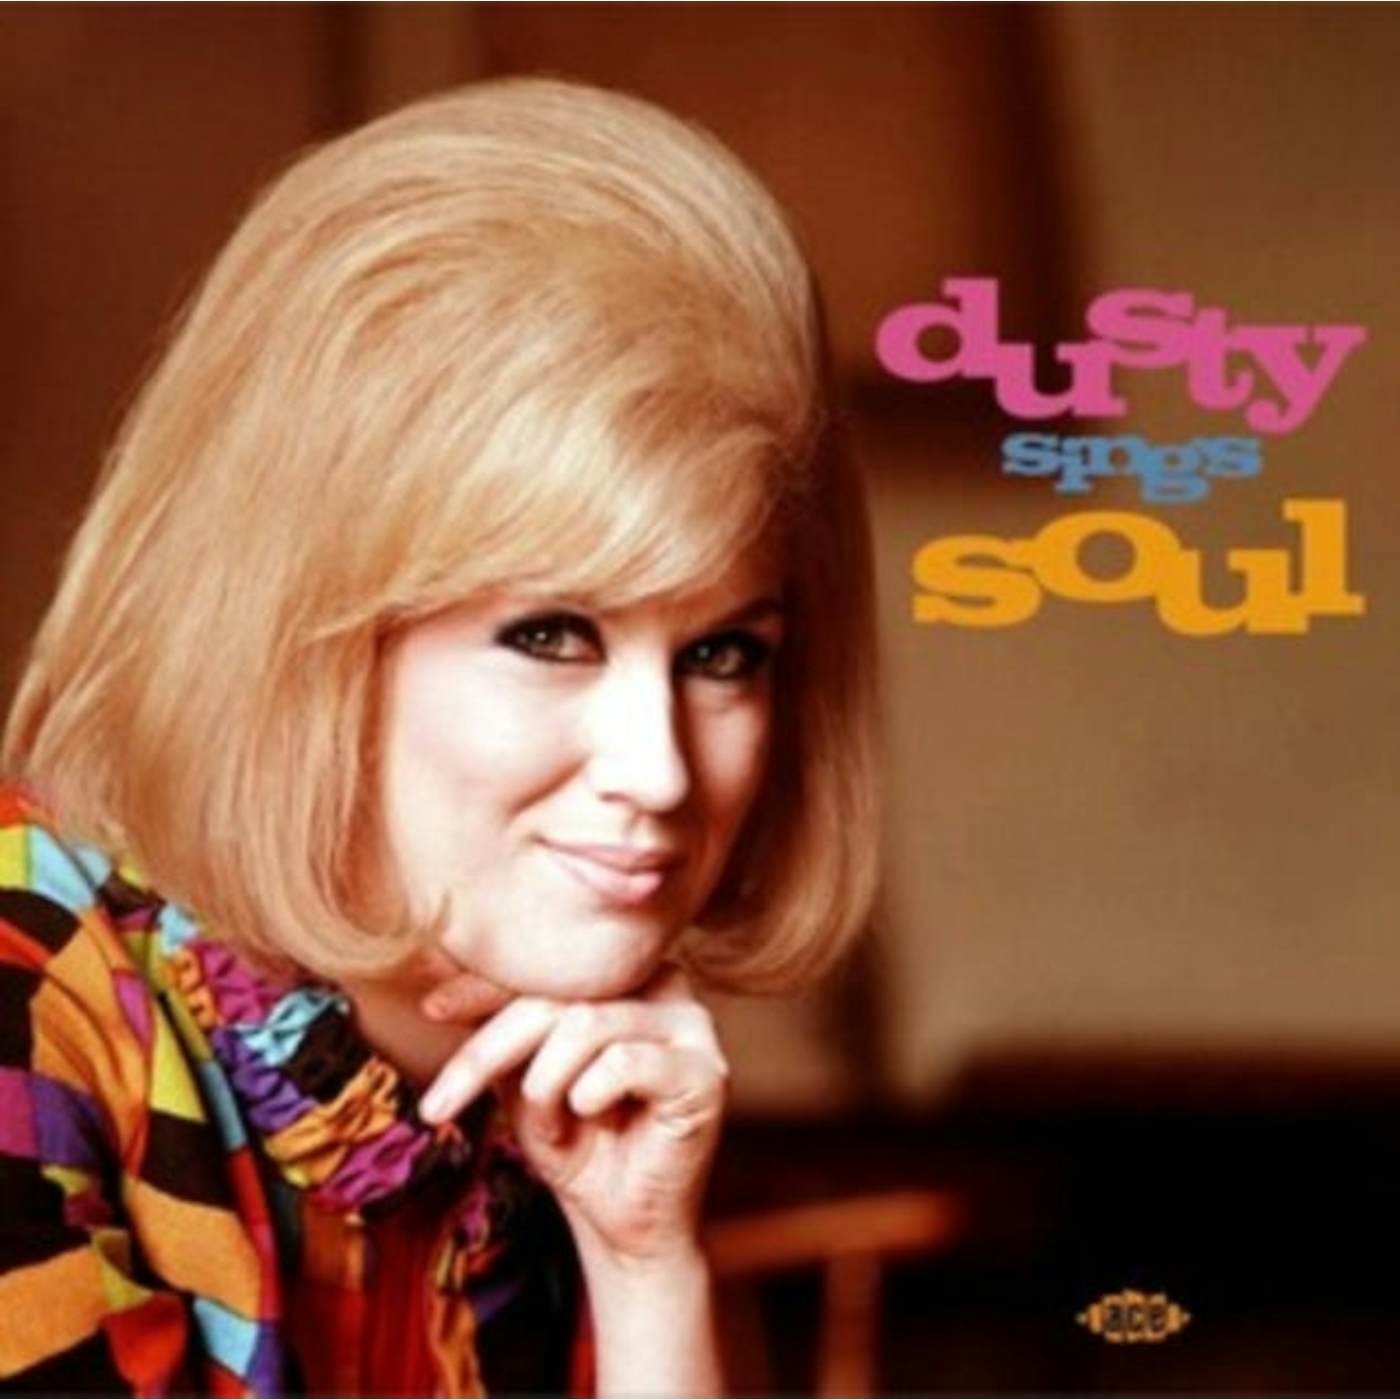 Dusty Springfield CD - Dusty Sings Soul